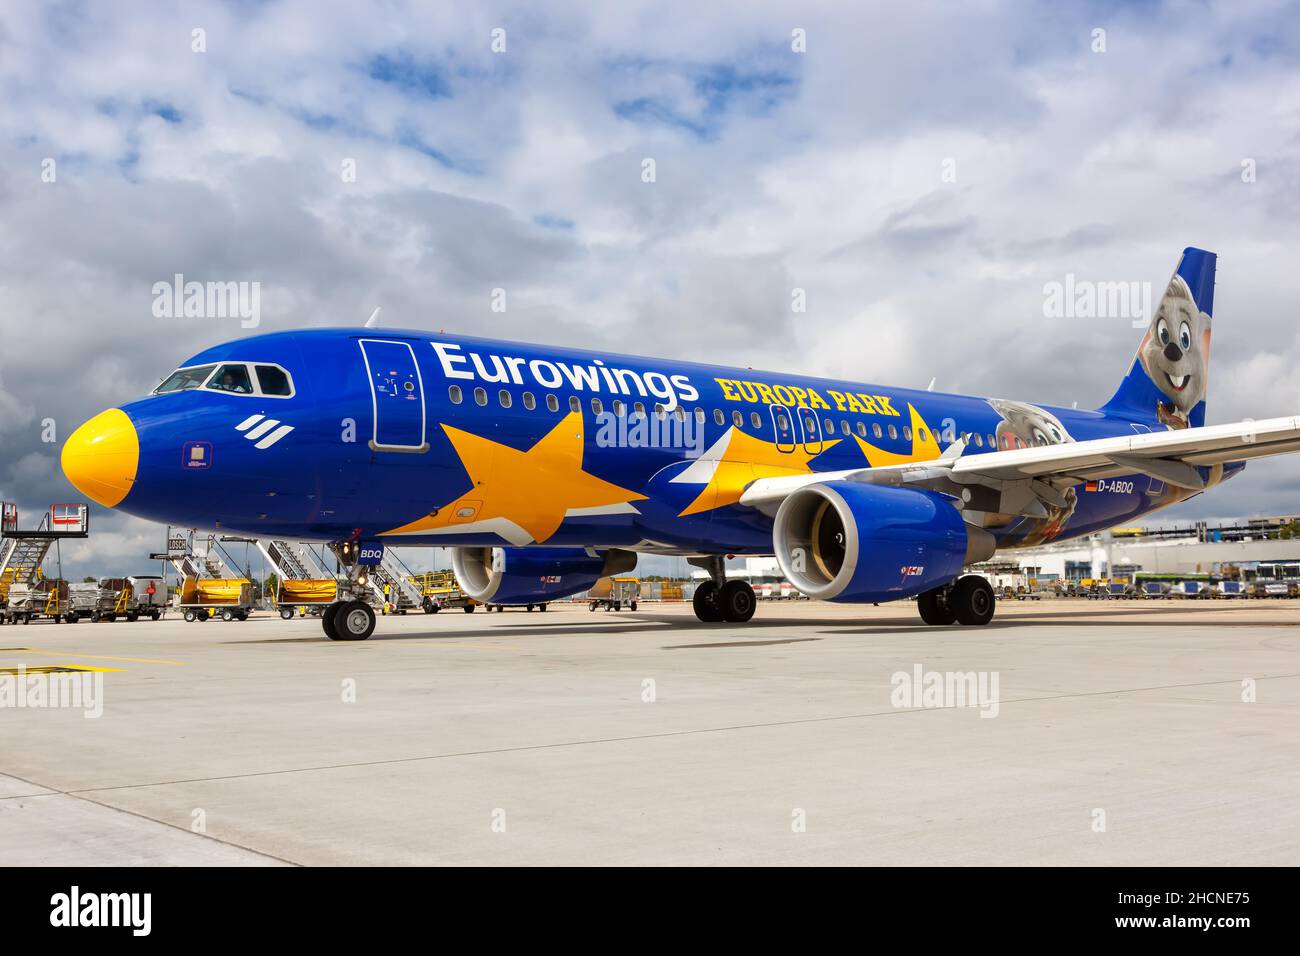 Stoccarda, Germania - 11 settembre 2021: Eurowings Airbus A320 aereo nell'Europa Park livrea speciale all'aeroporto di Stoccarda (Str) in Germania. Foto Stock